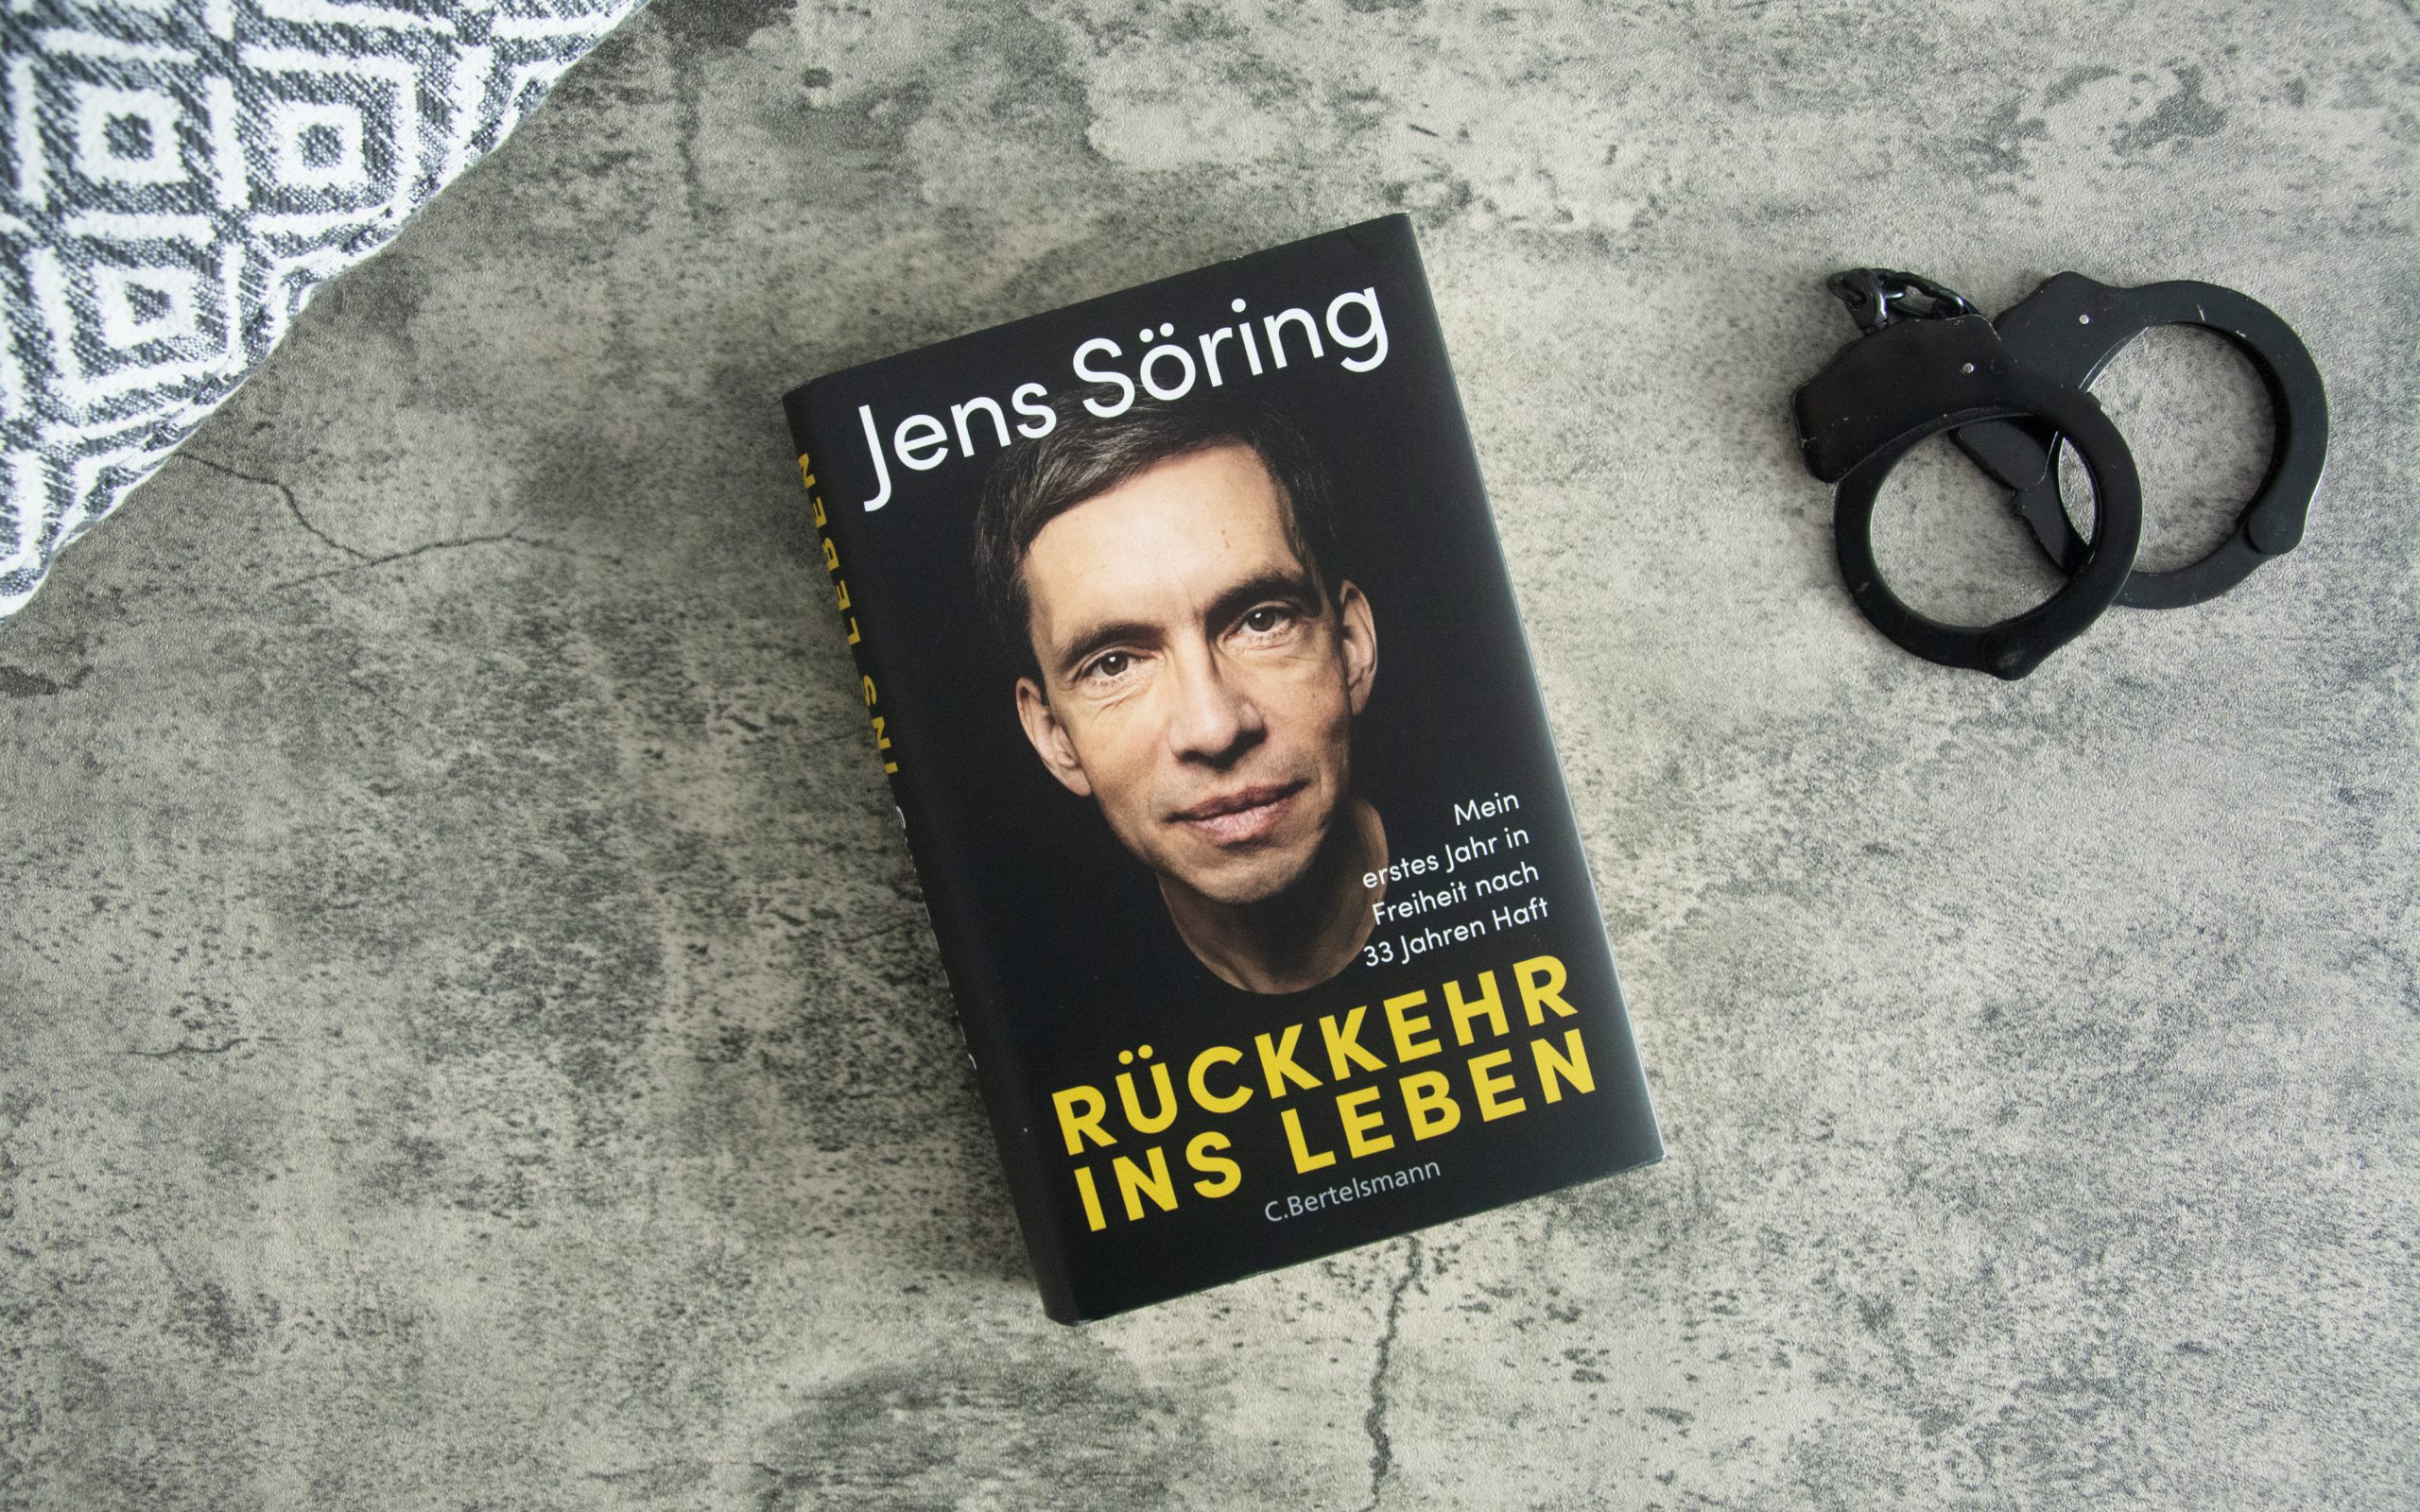 »Rückkehr ins Leben – Mein erstes Jahr in Freiheit nach 33 Jahren Haft« von Jens Söring